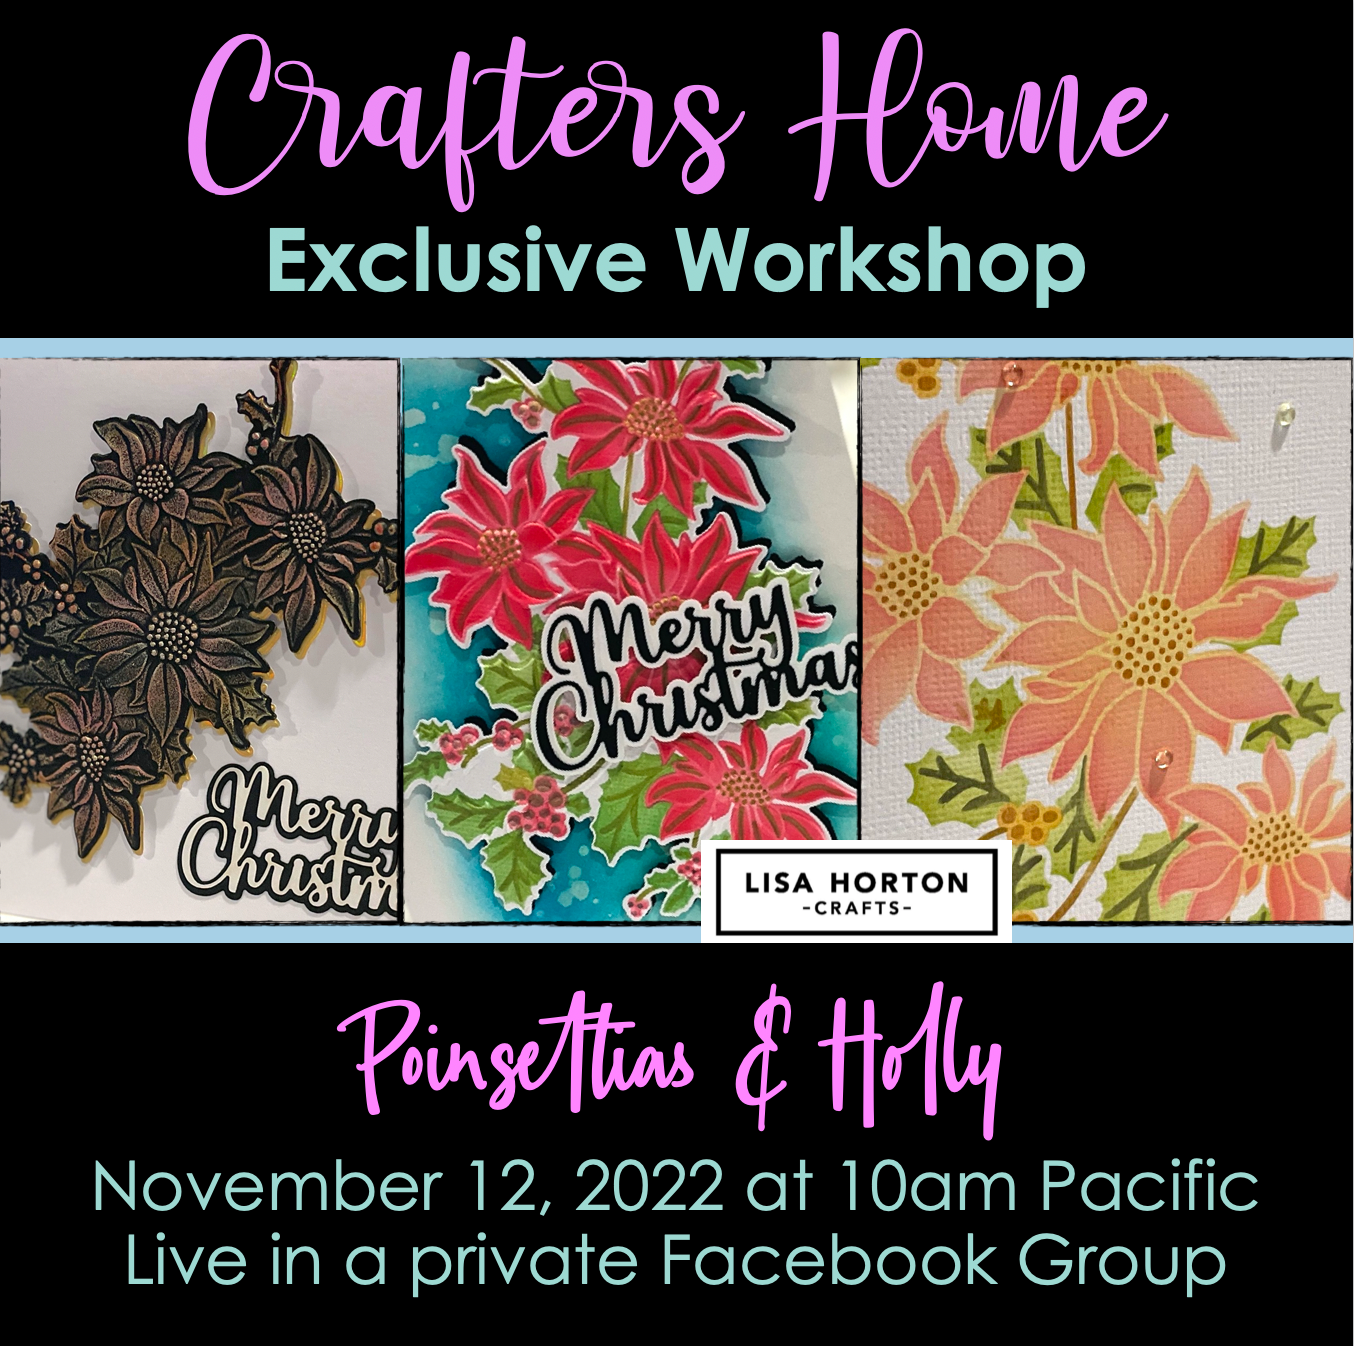 Poinsettias & Holly Class with Lisa Horton